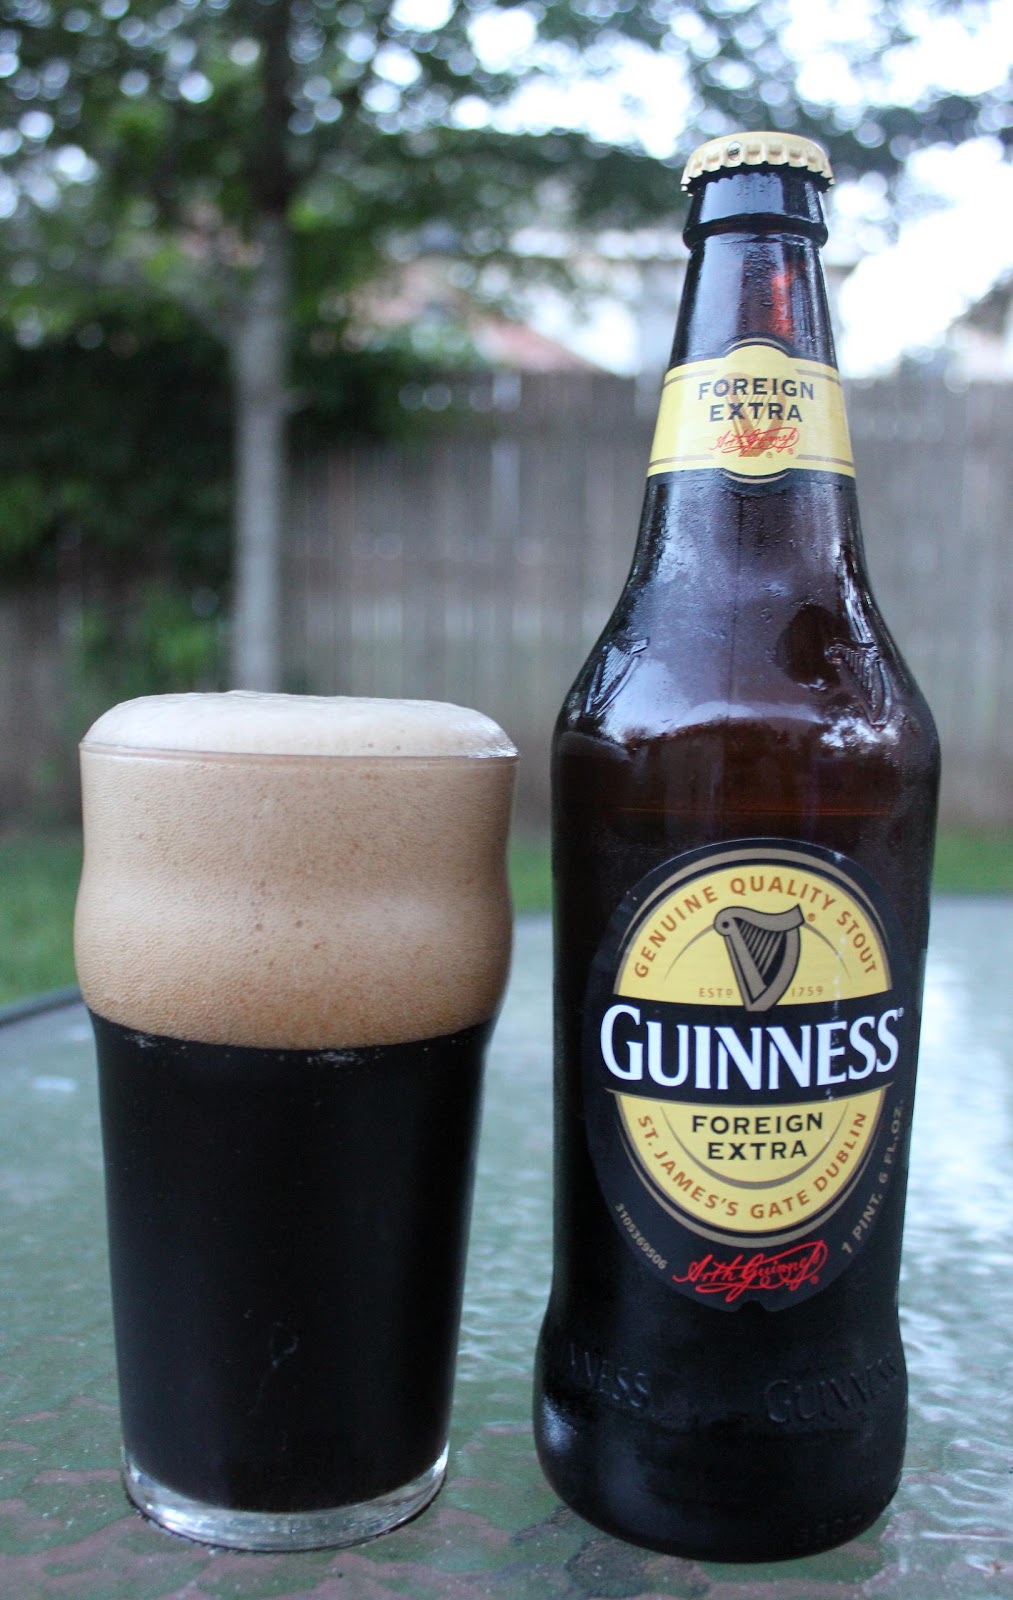 THE BRÜ: The Brü Revü – Guinness Foreign Extra Stout